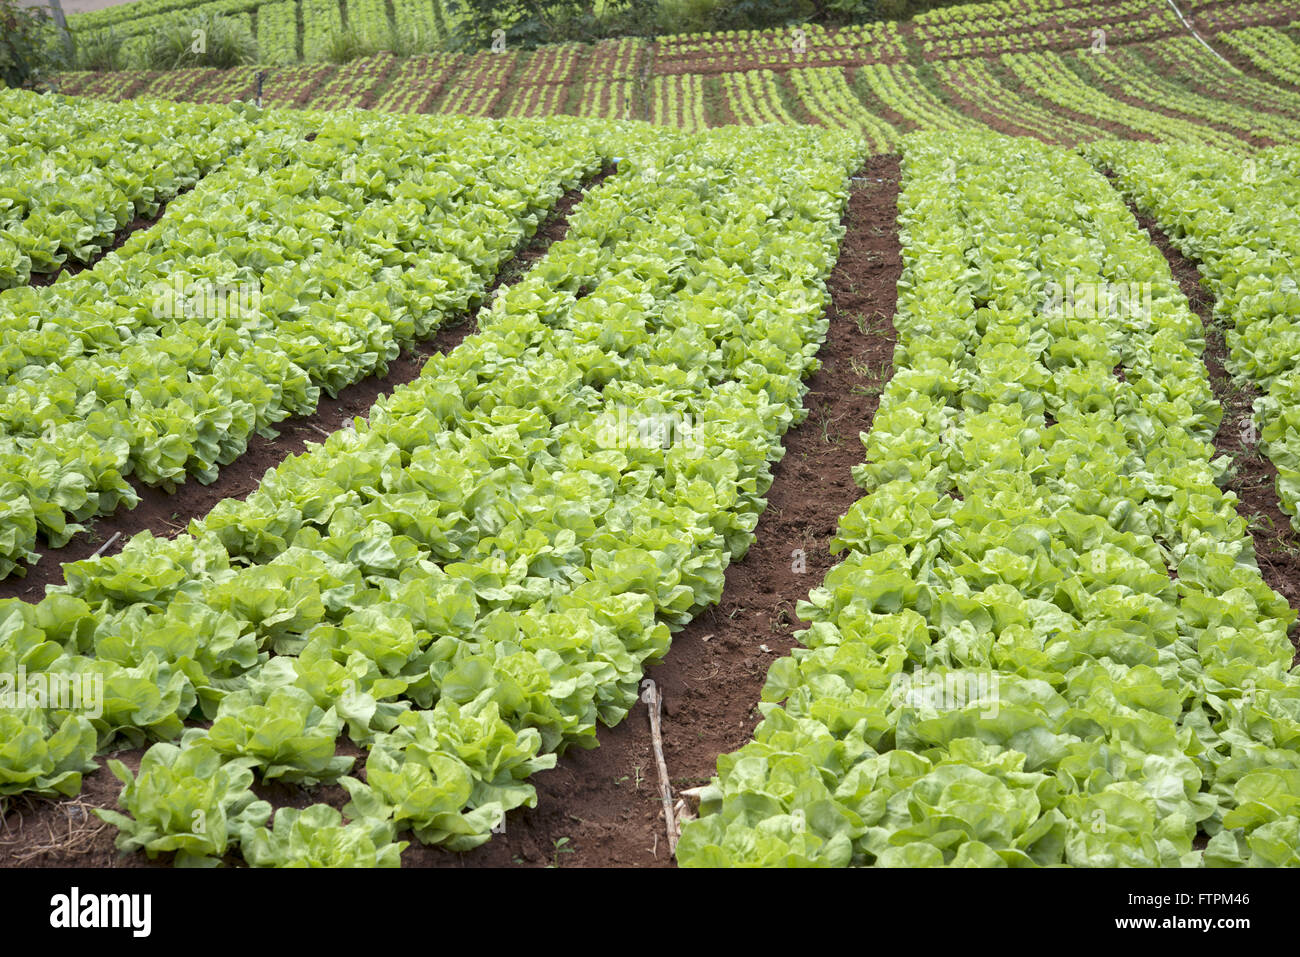 Planting lettuce in Serra Fluminense Stock Photo